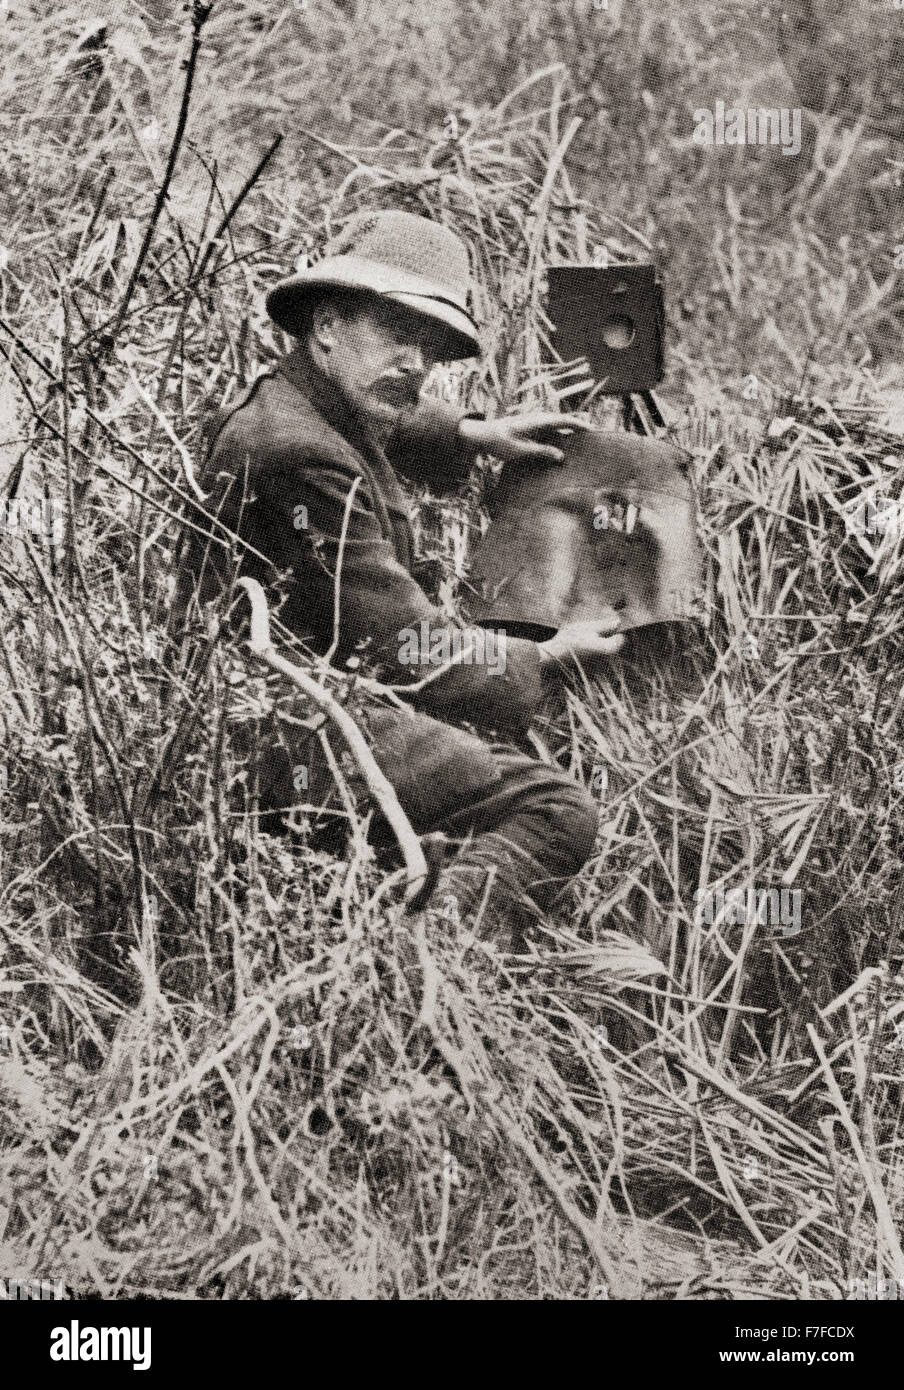 La ciliegia Kearton, 1871-1940. Pioniere inglese Wildlife fotografo e scrittore. Visto qui tenendo un legging che un leone aveva picchiato attraverso durante una delle sue spedizioni africane. Foto Stock